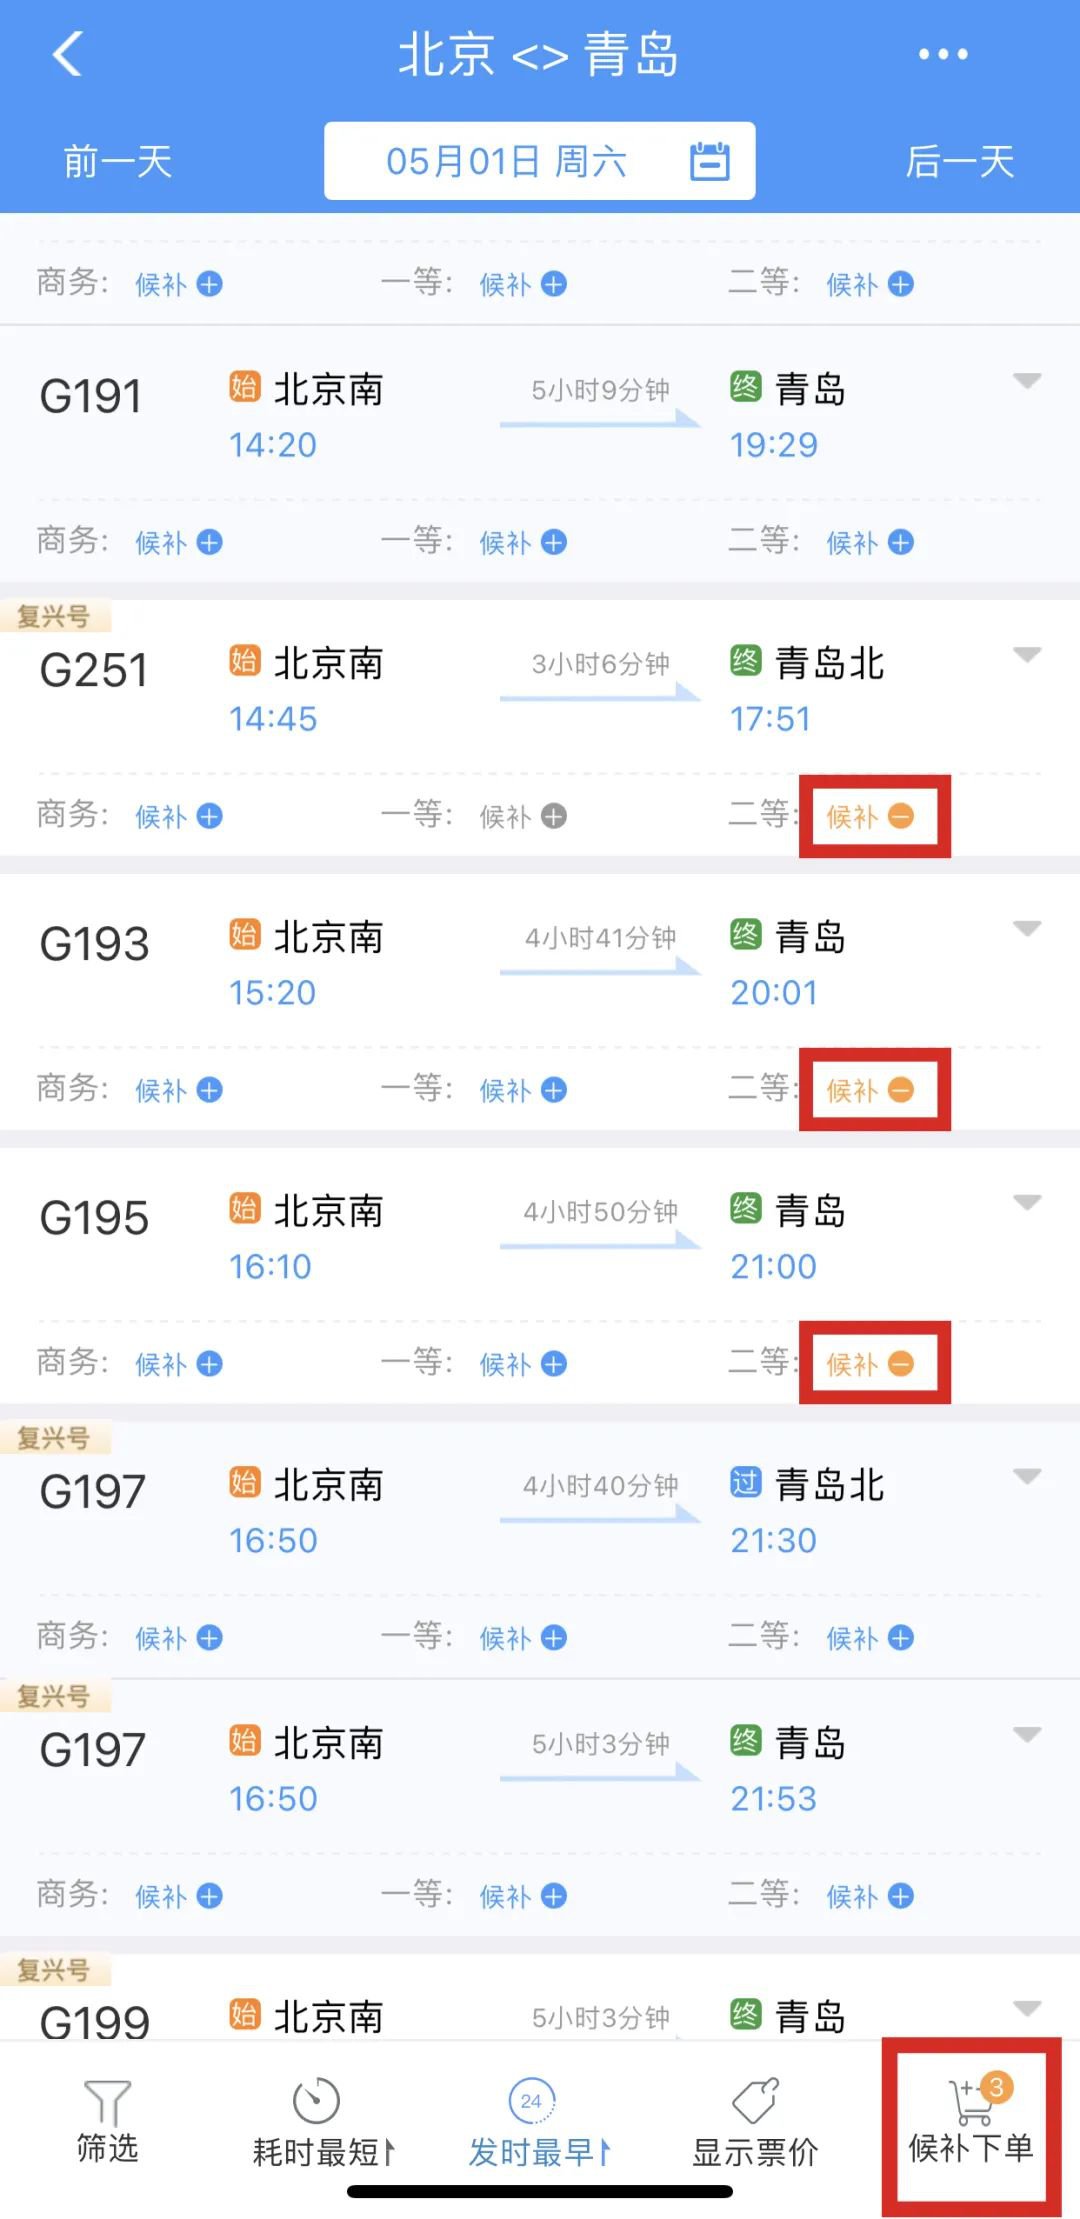 12306中国铁路积分兑换火车票 - 知乎